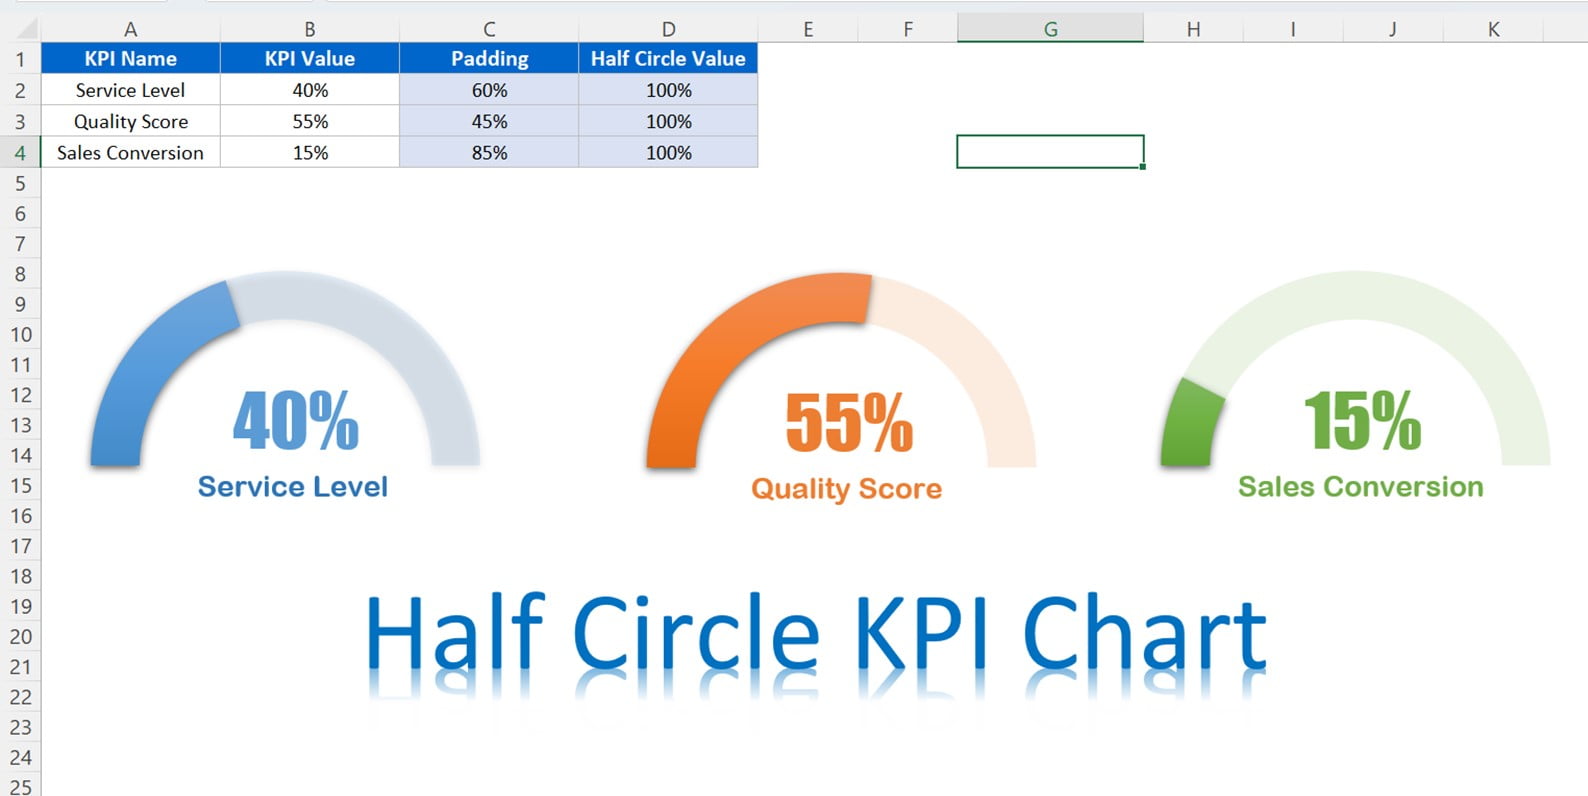 Half Circle KPI Charts